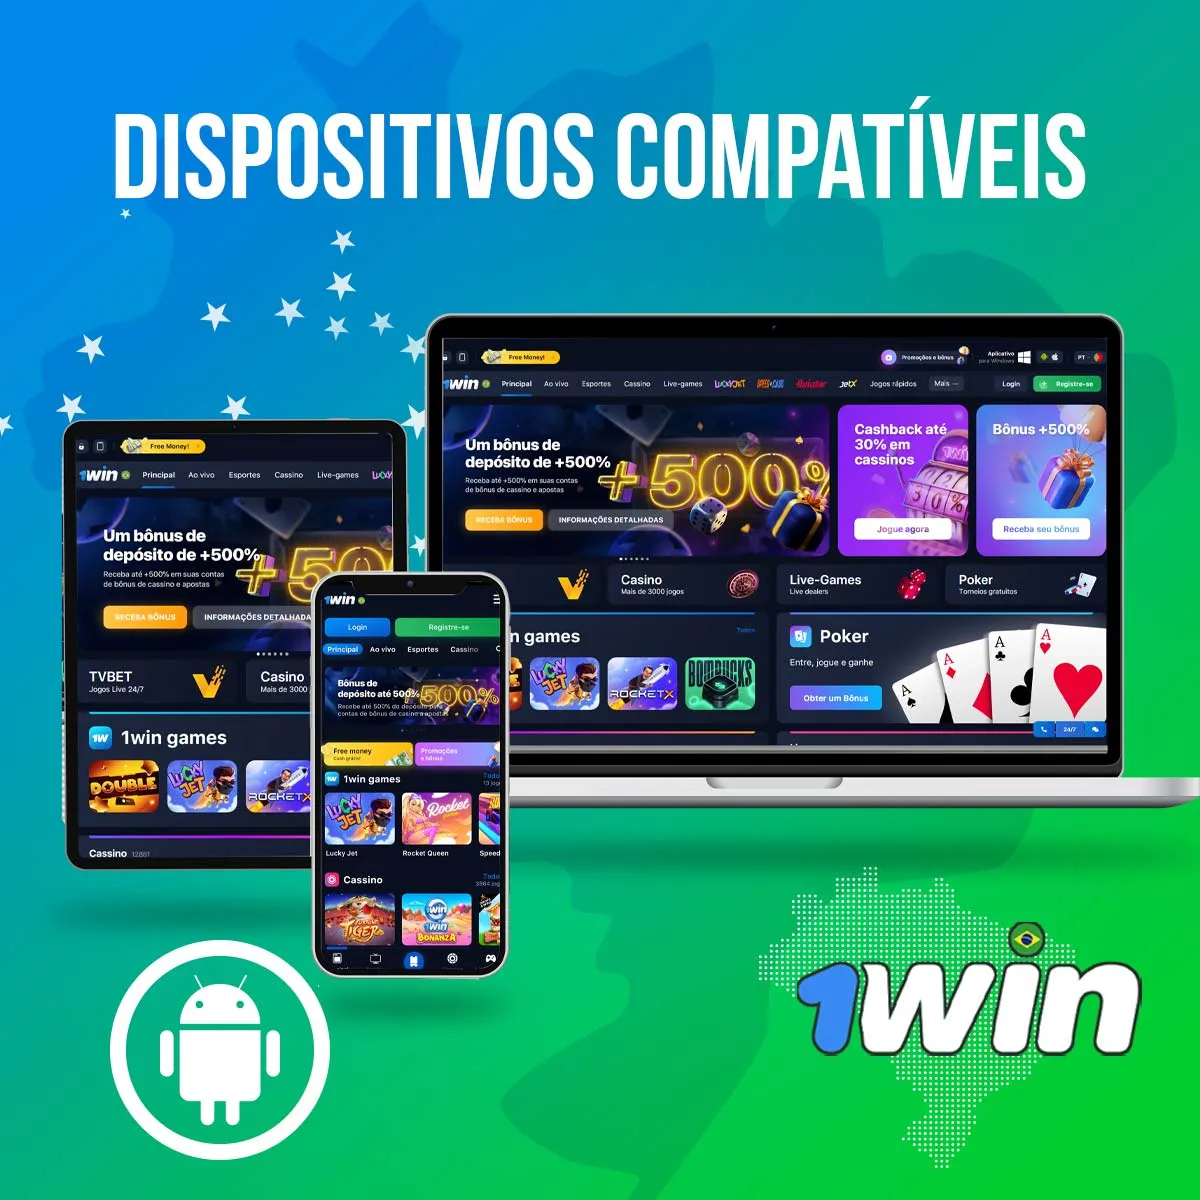 Dispositivos Compatíveis para instalar o aplicativo 1win no Android